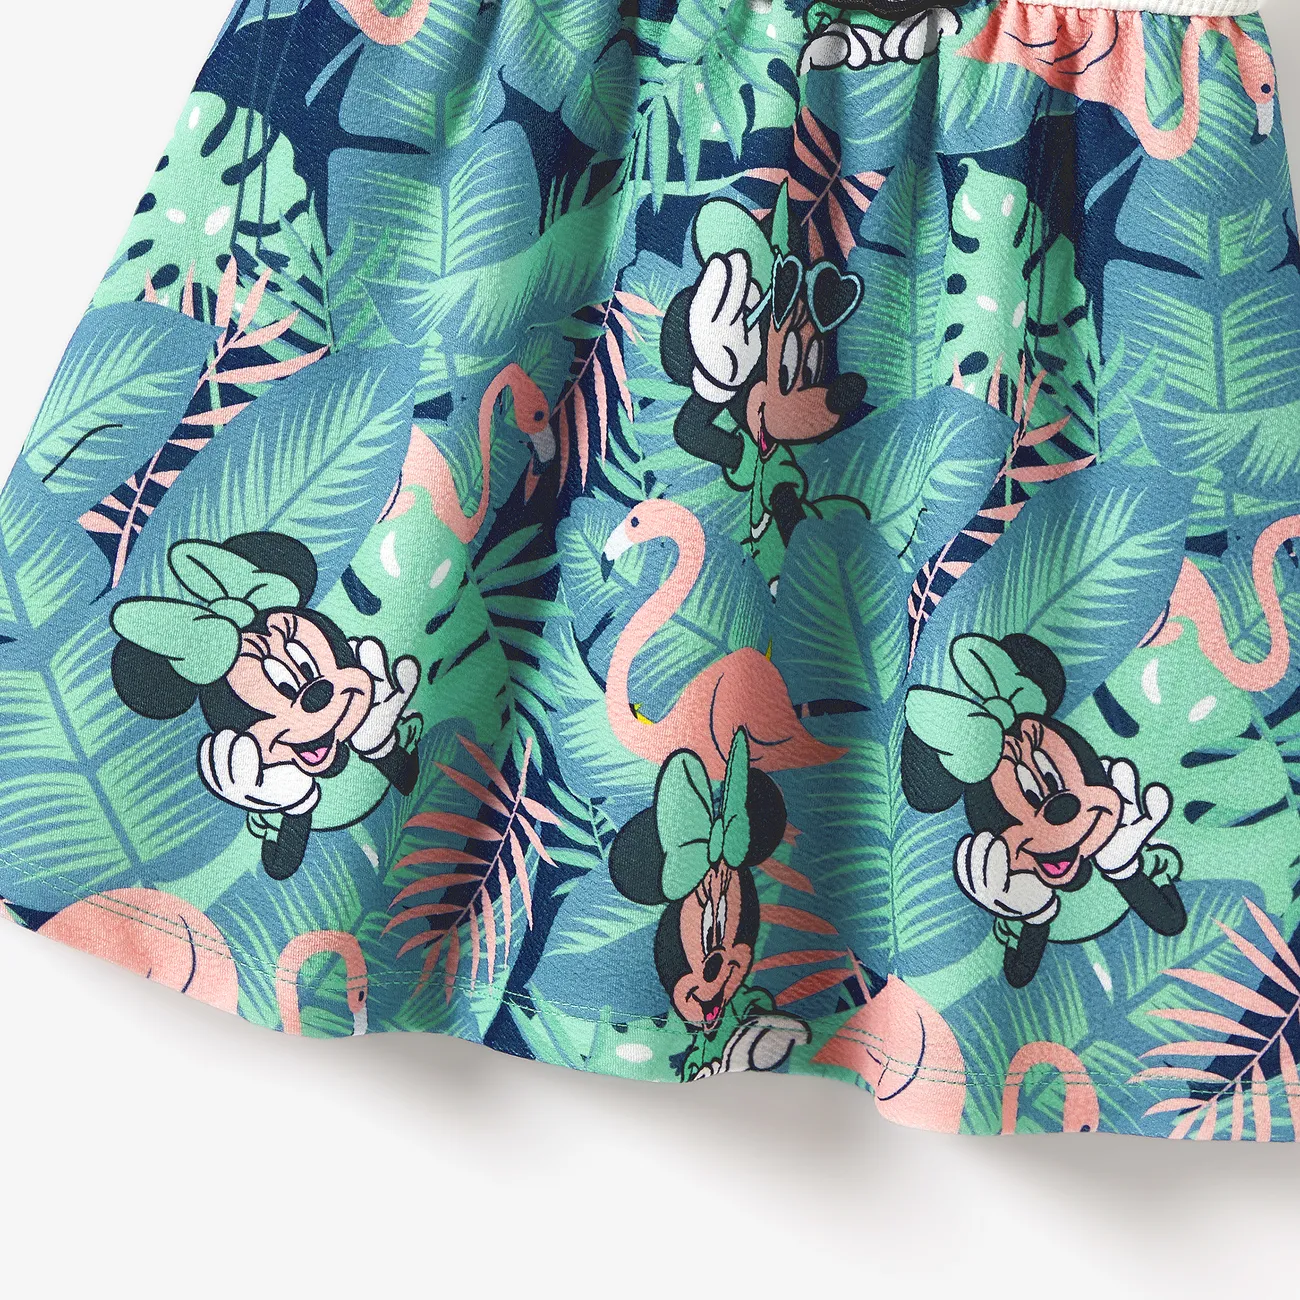 Disney Mickey and Friends Familien-Looks Tropische Pflanzen und Blumen Kurzärmelig Familien-Outfits Sets Grün Weiß big image 1